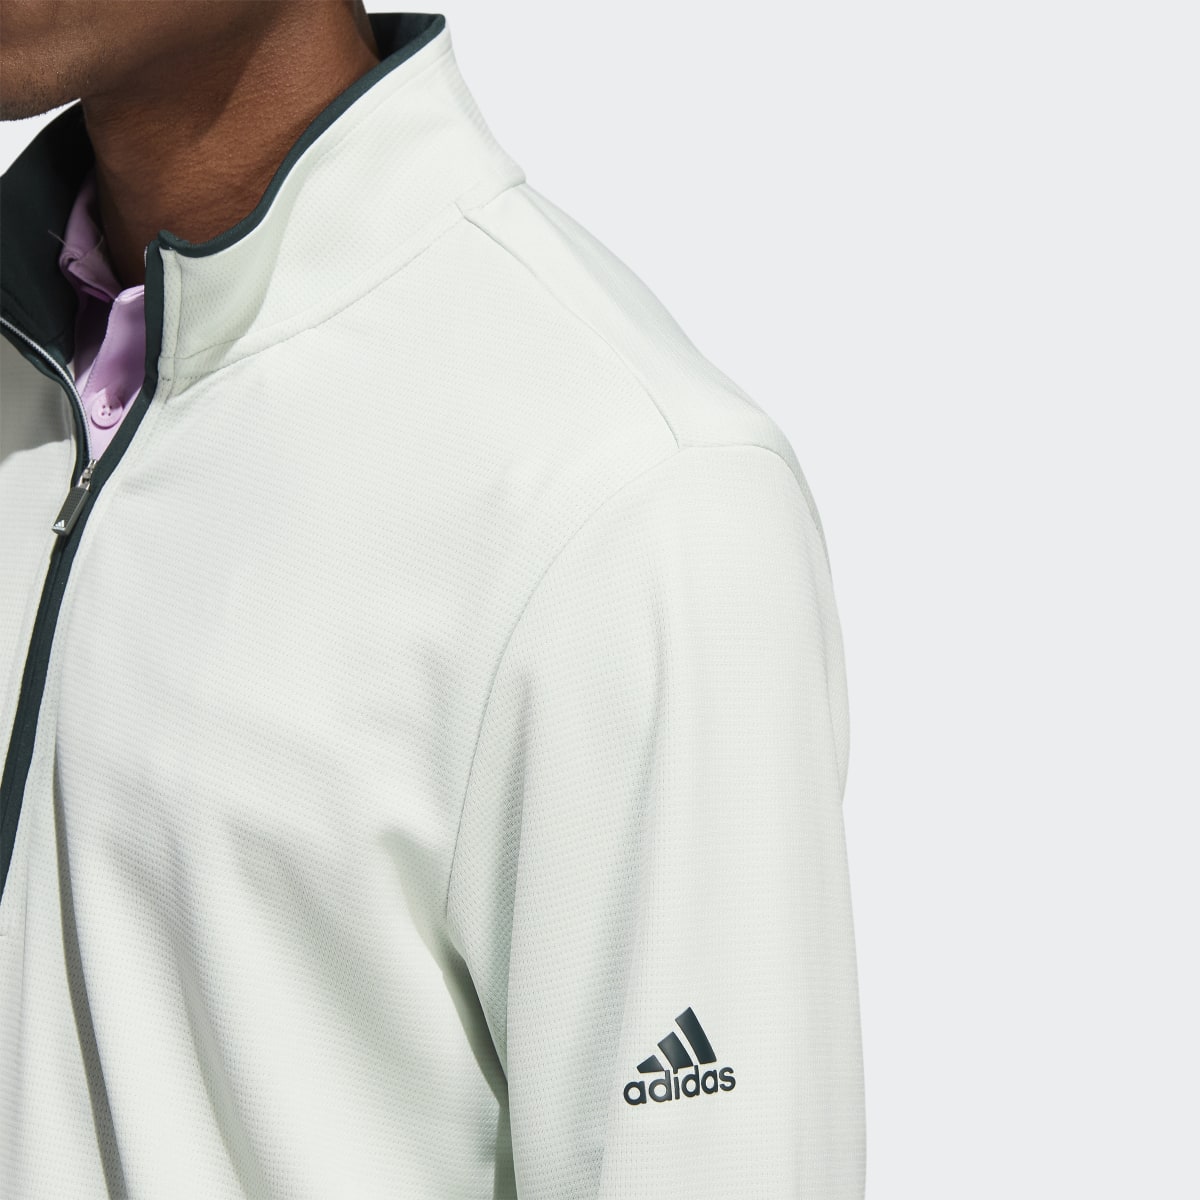 Adidas Quarter-Zip Pullover. 6